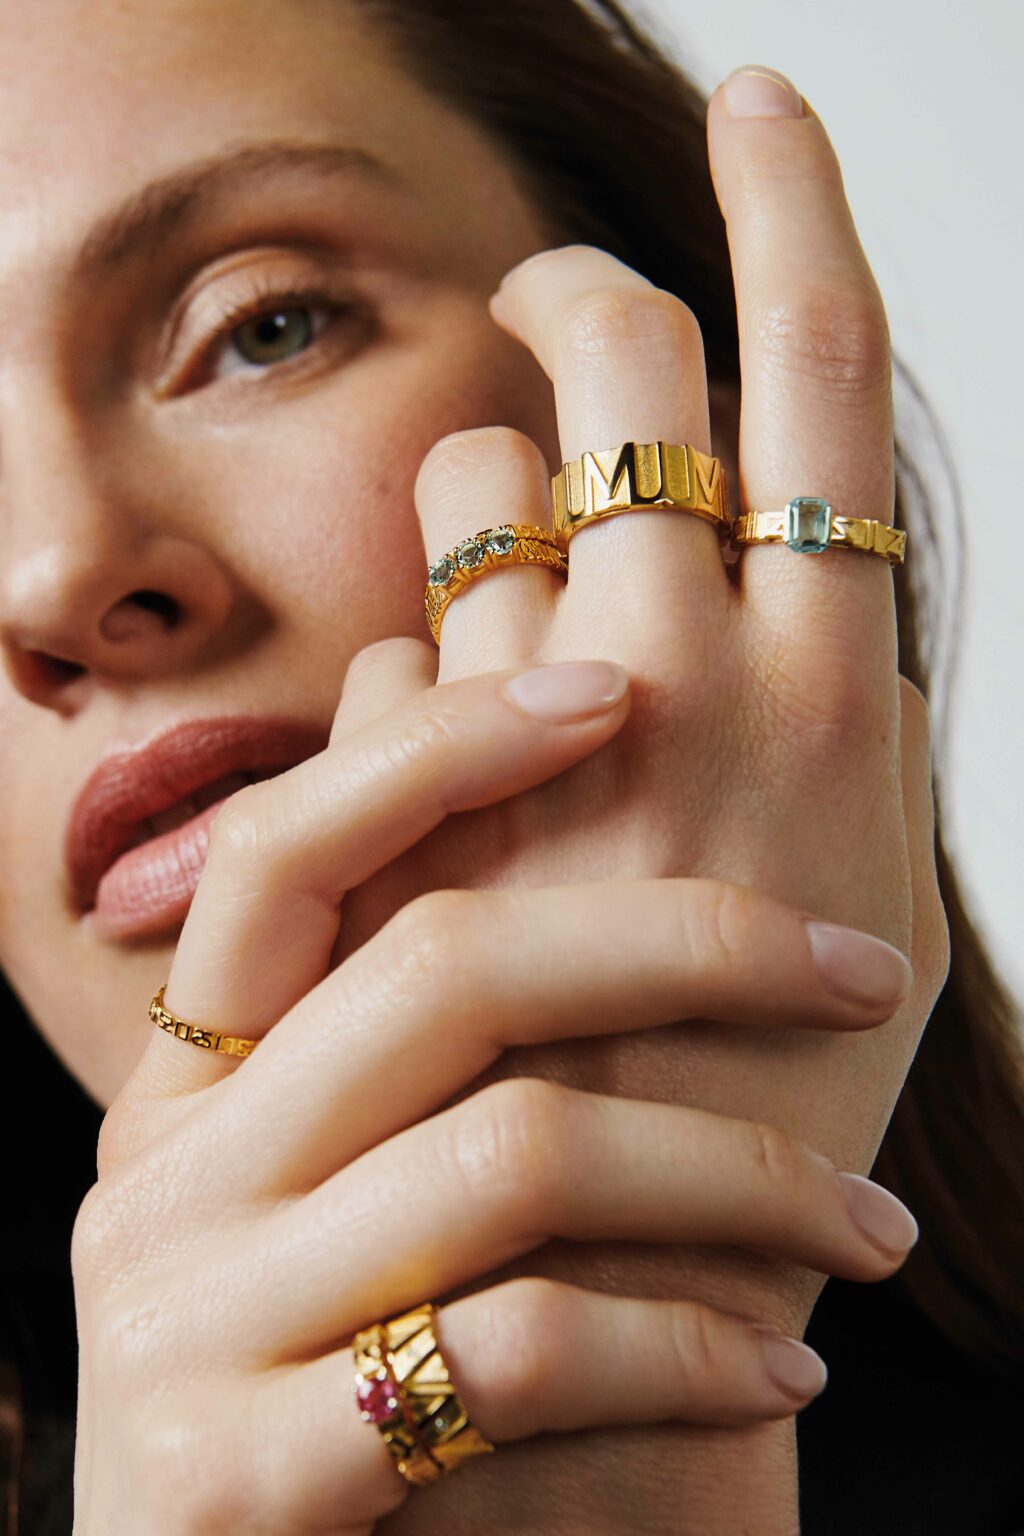 Bild von Frau mit verschiedenen Ringen an der Hand